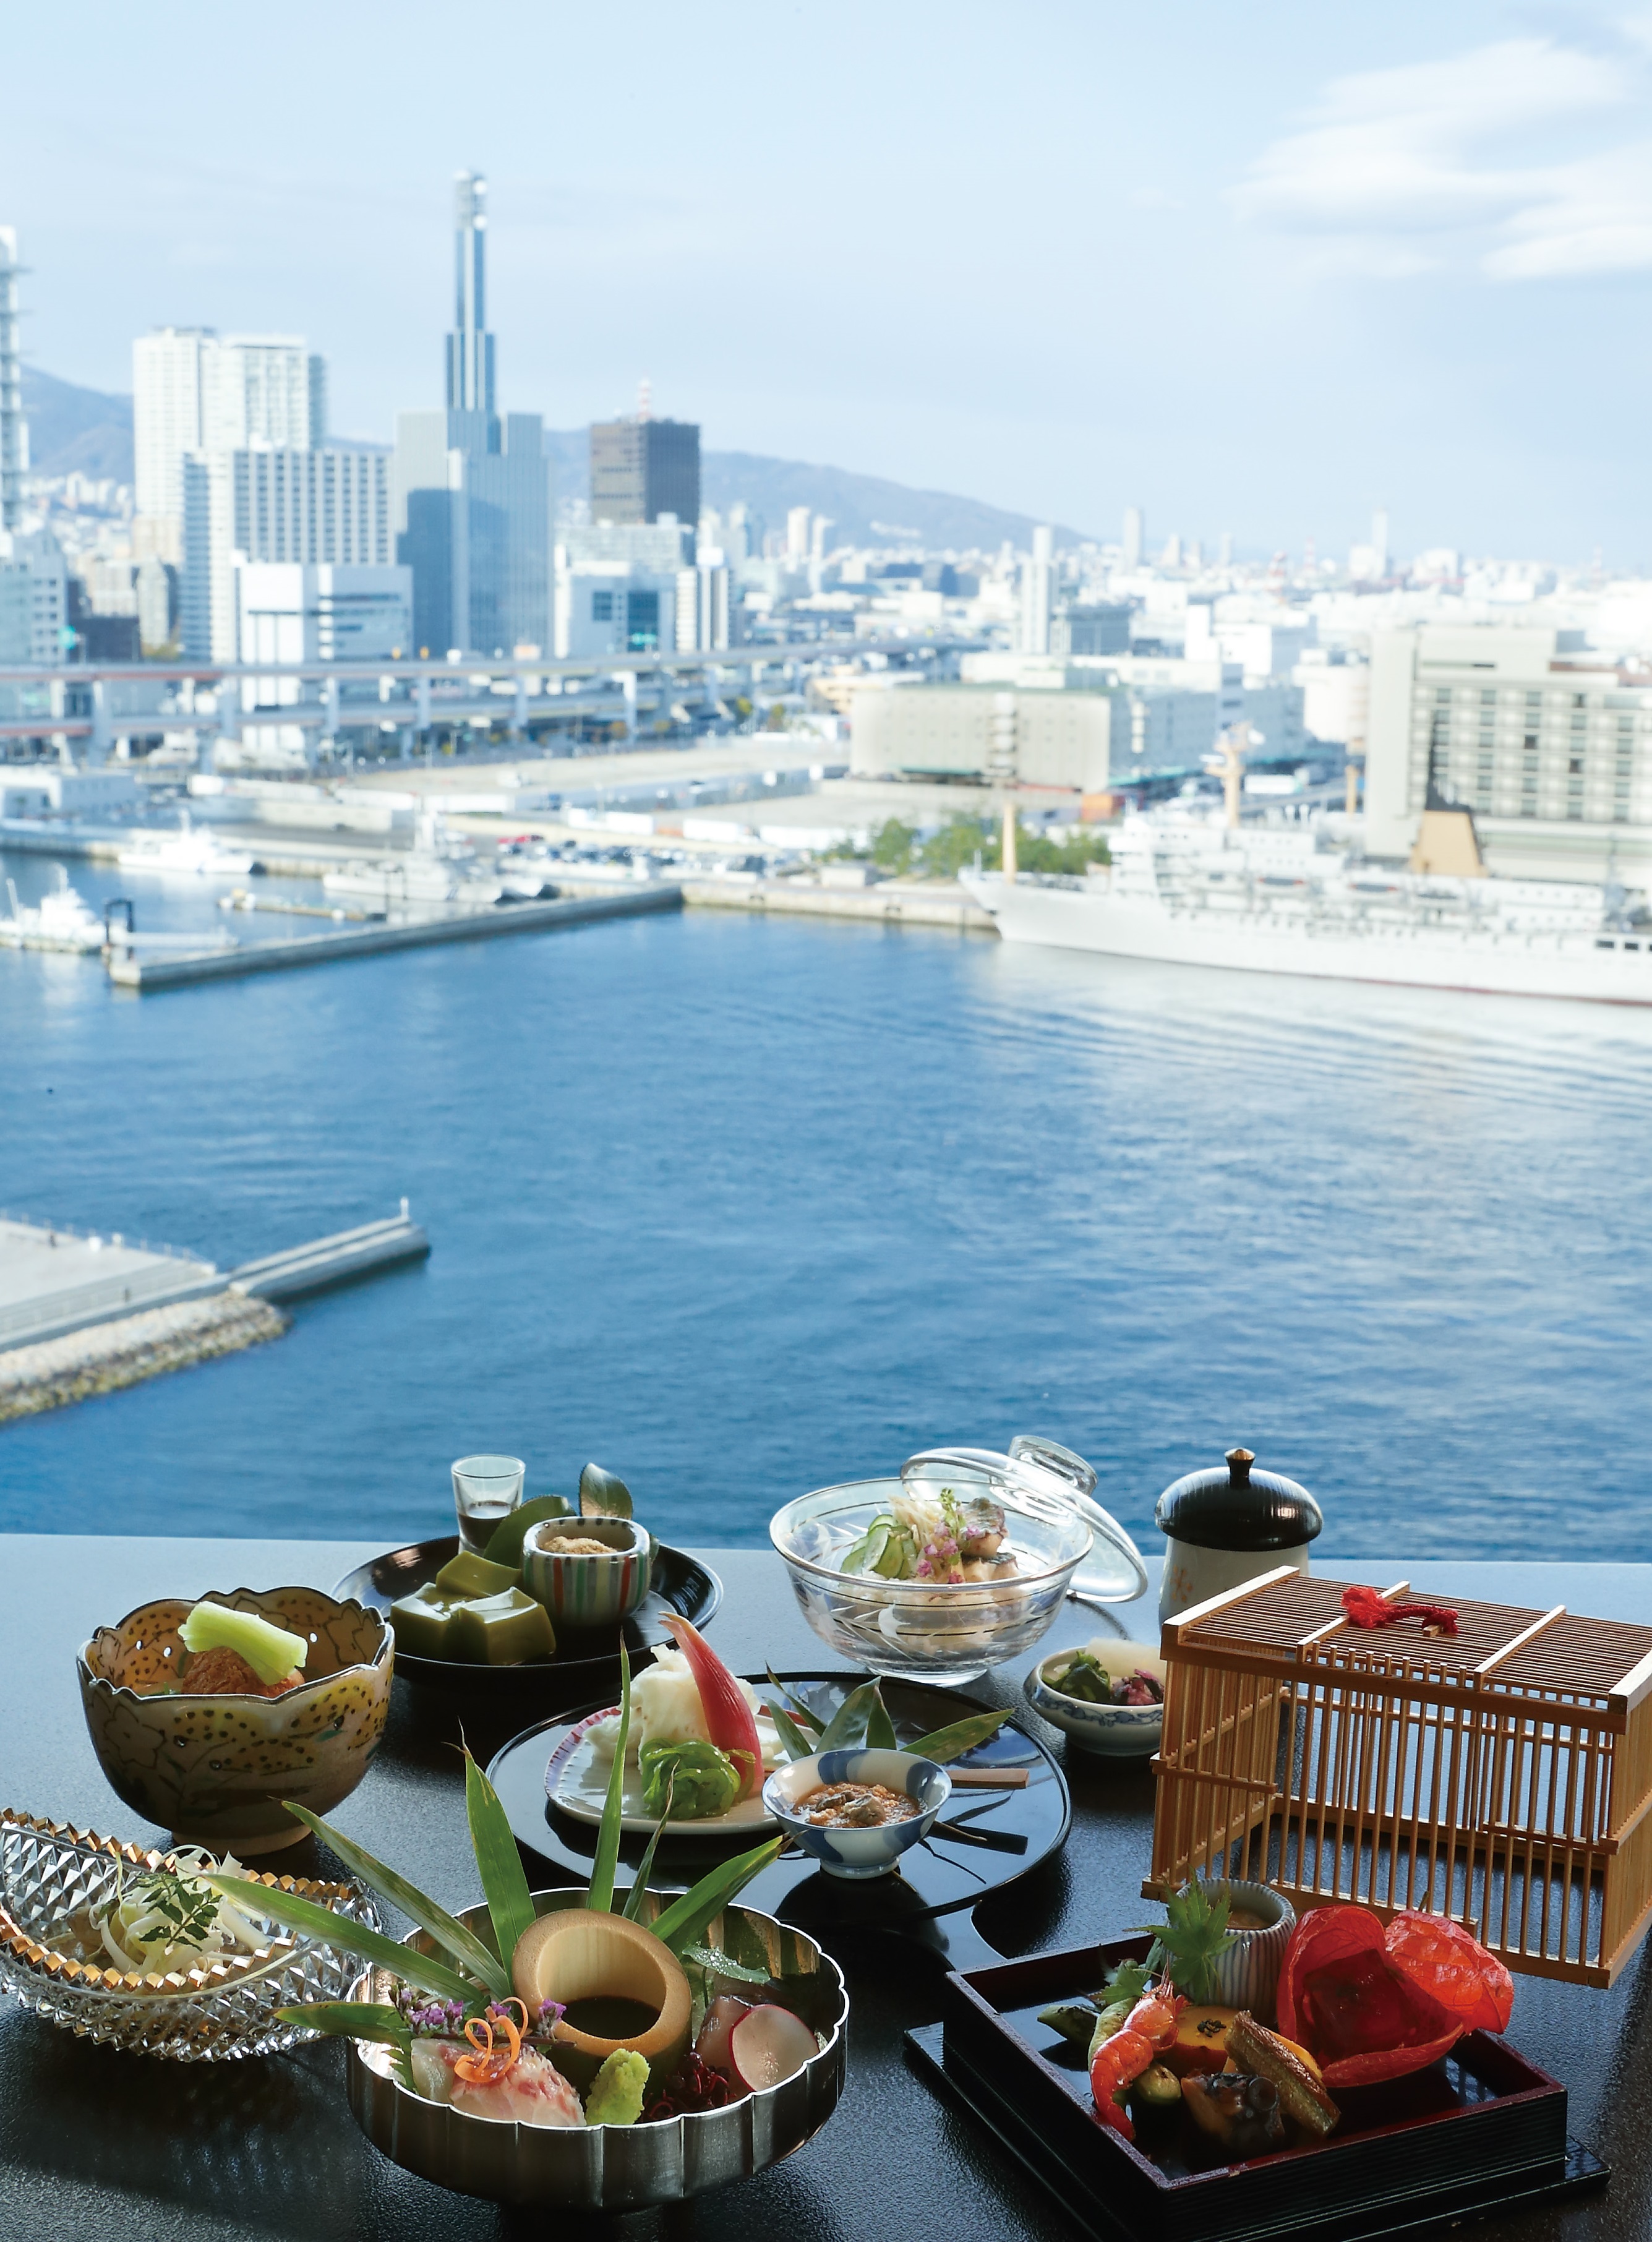 神戸メリケンパークオリエンタルホテル 旬の素材の魅力を引き算の美学で組み立てる 日本料理 石庭 が心を込めて贈る夏の会席 Hmjのプレスリリース